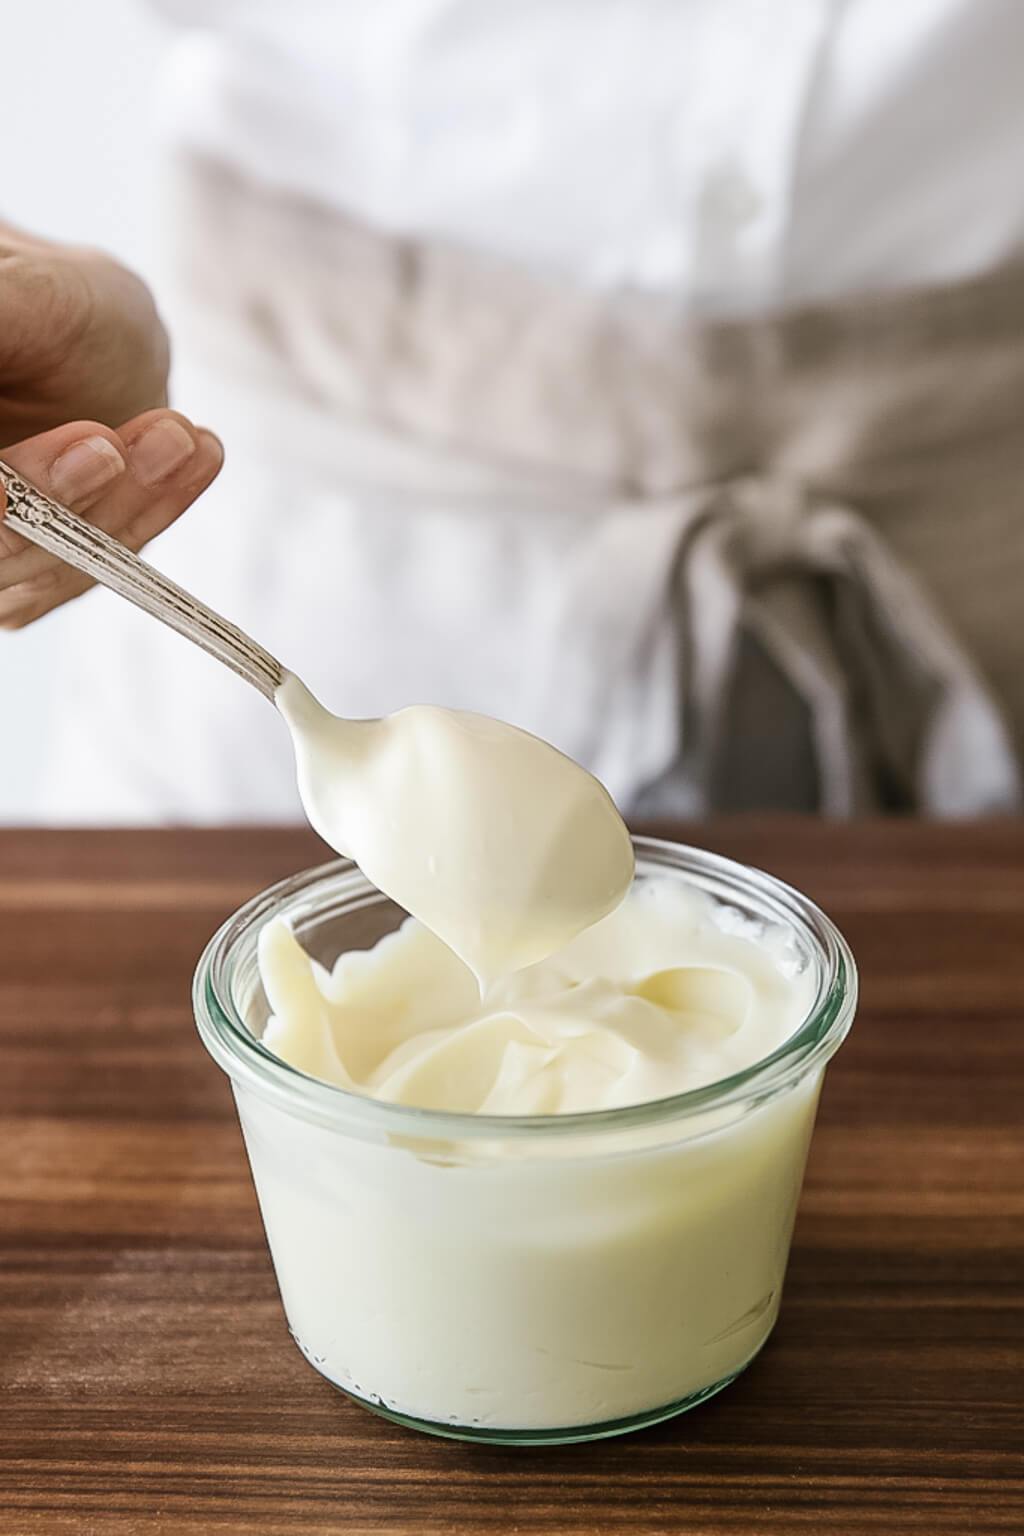 Bạn có thể dùng sốt mayonnaise để làm sạch và đánh bóng đồ gỗ.